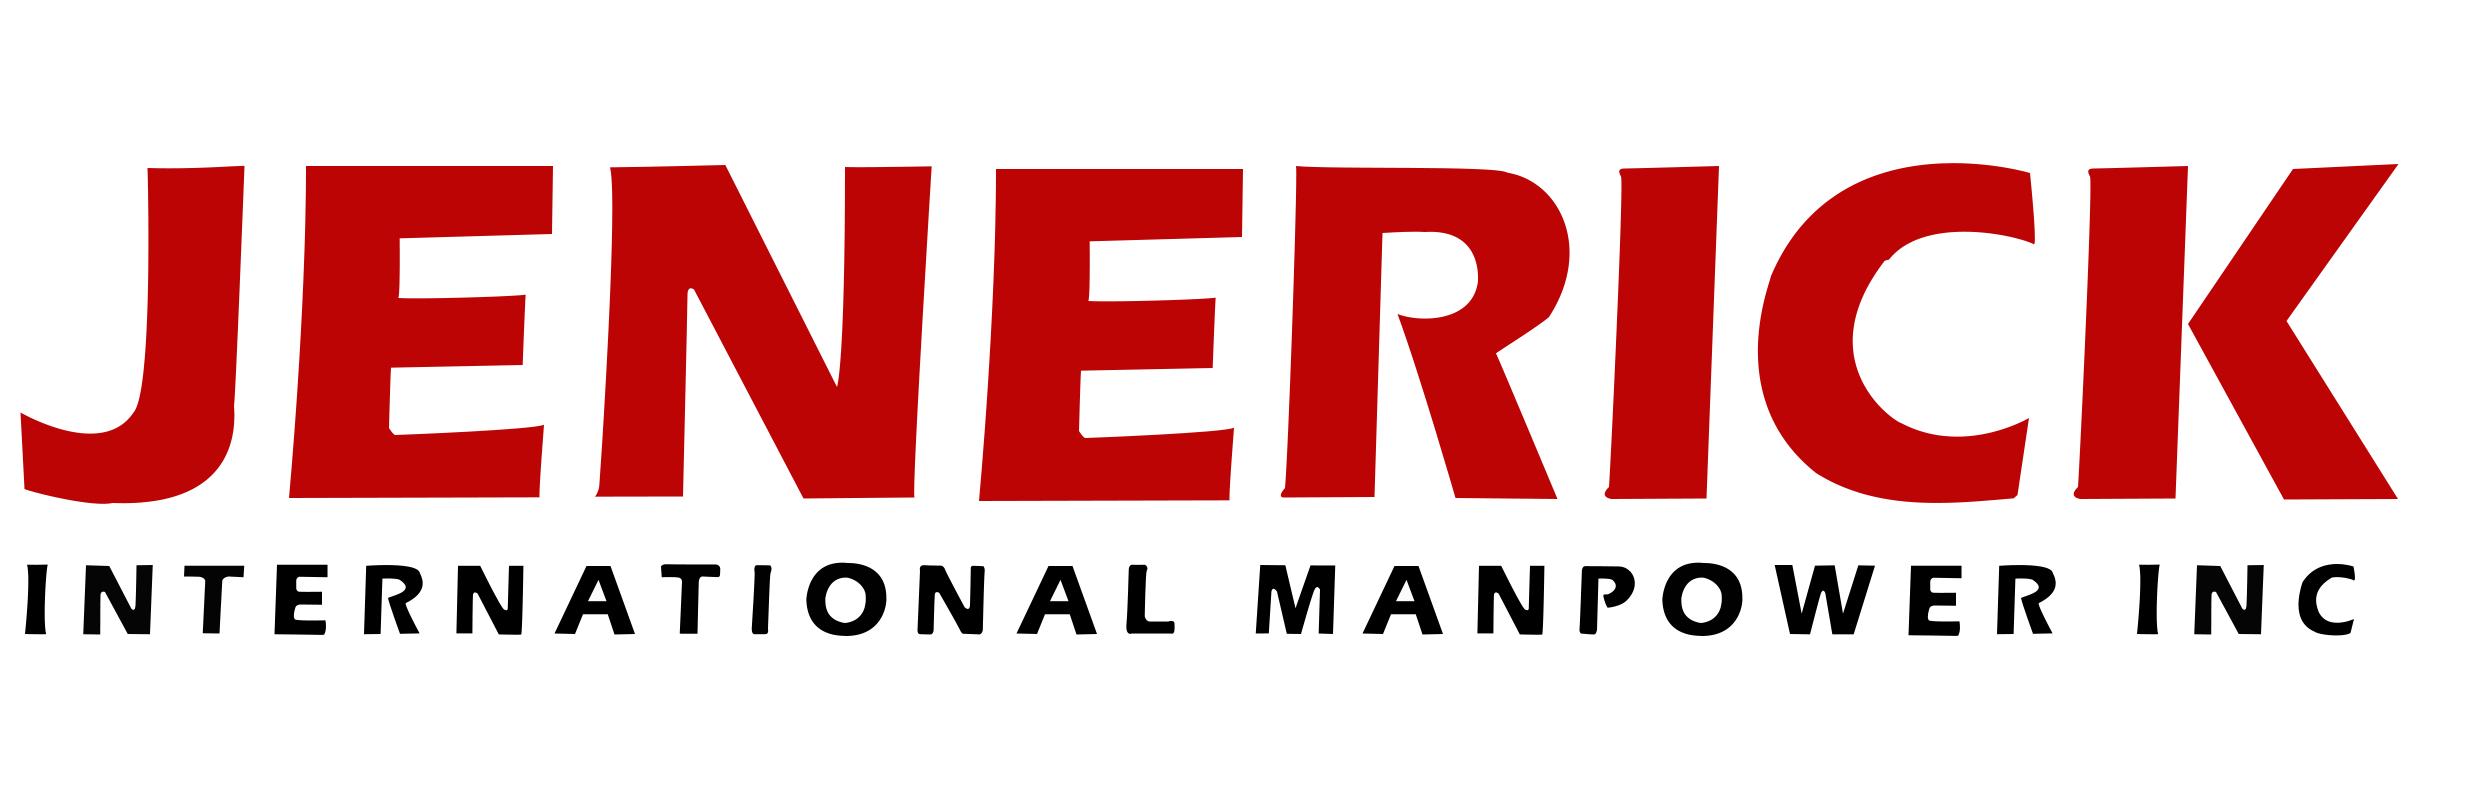 Jenerick International Manpower Inc.